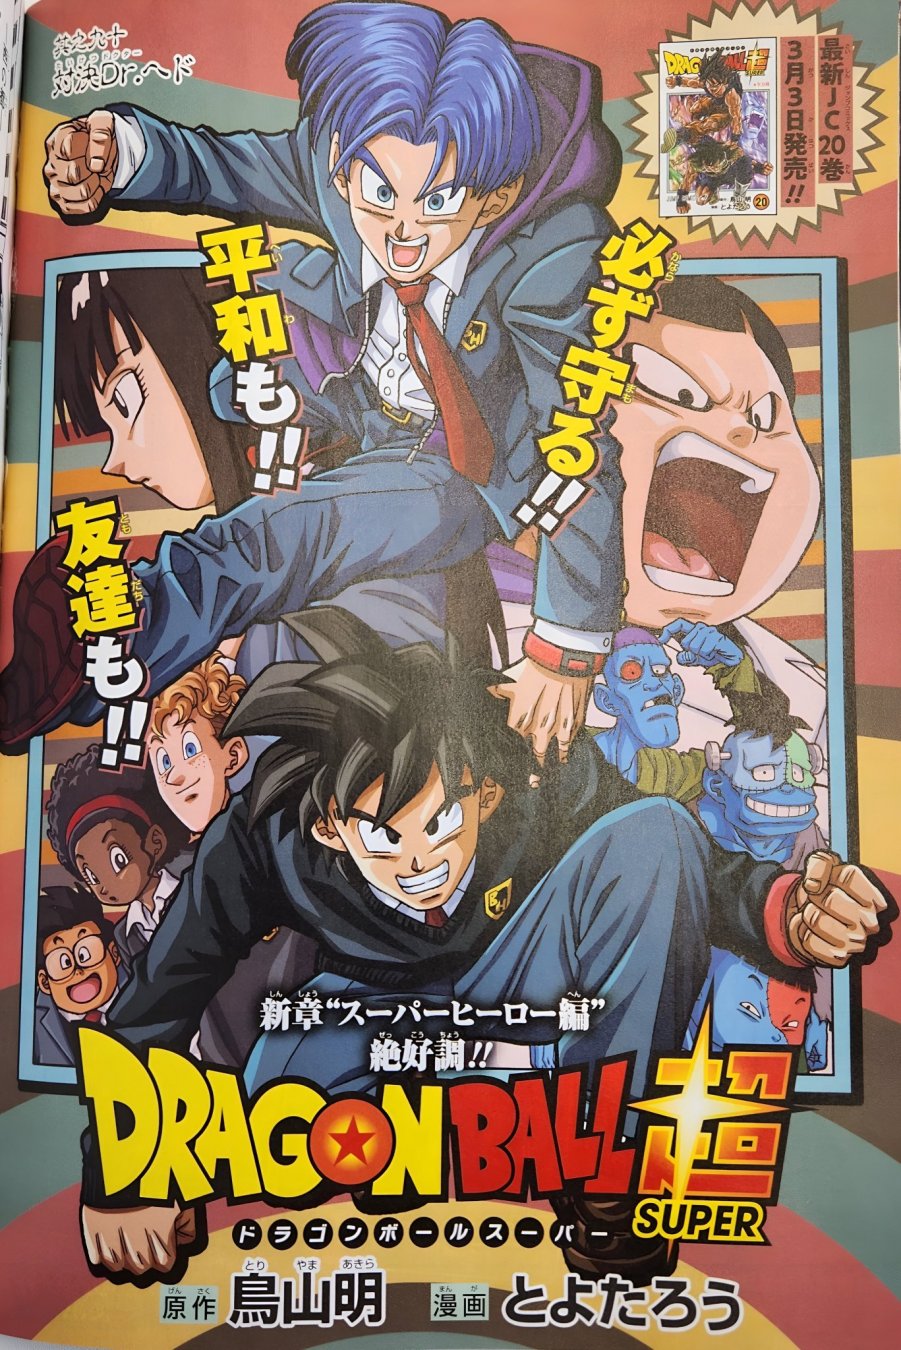 Dragon Ball Super: Super Hero será adaptado para manga